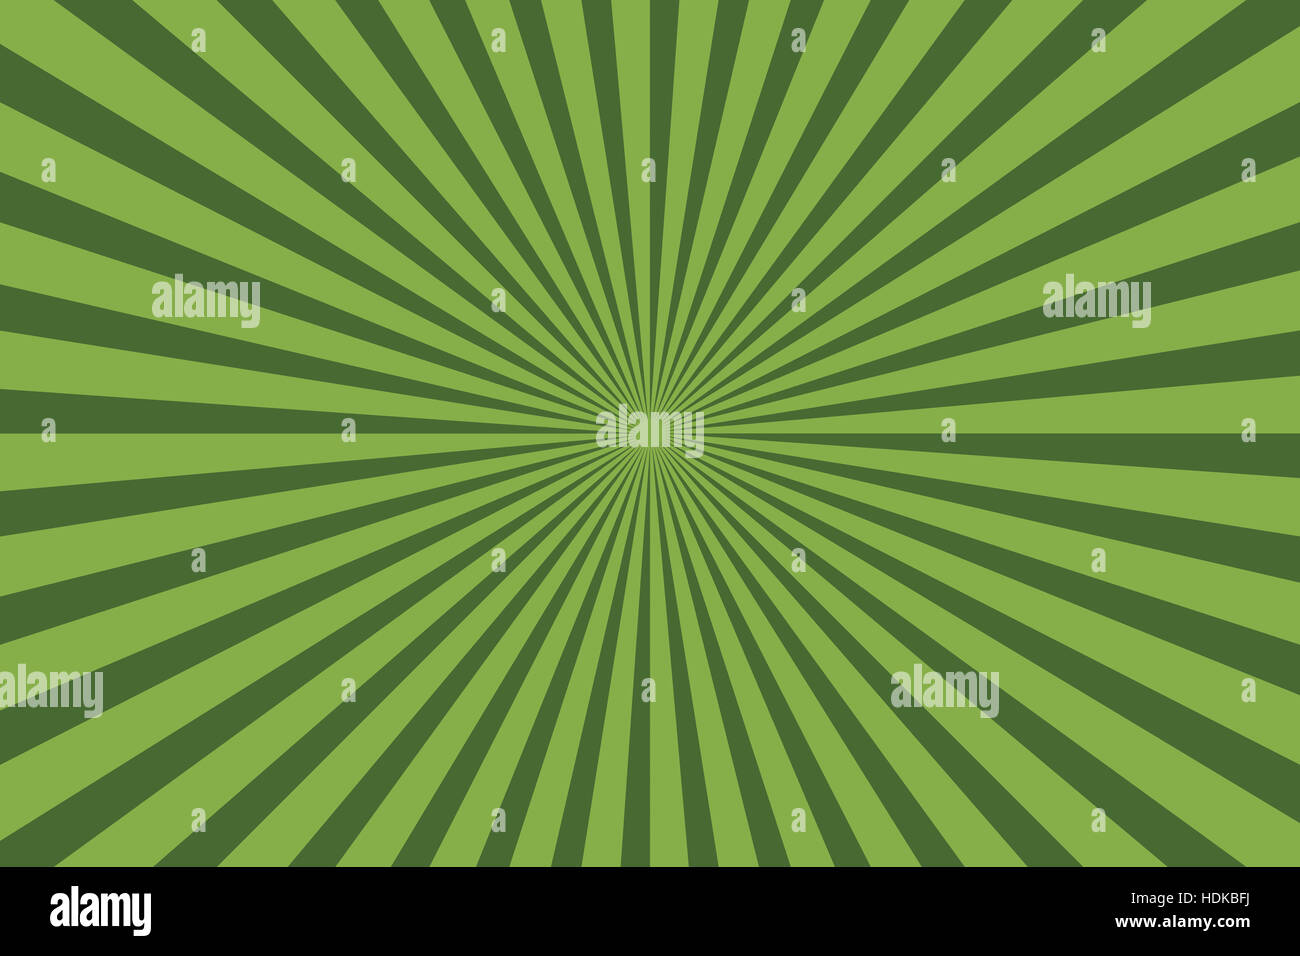 Zwei Schattierungen von grün Streifen strahlenförmig nach außen von centerpoint Stockfoto